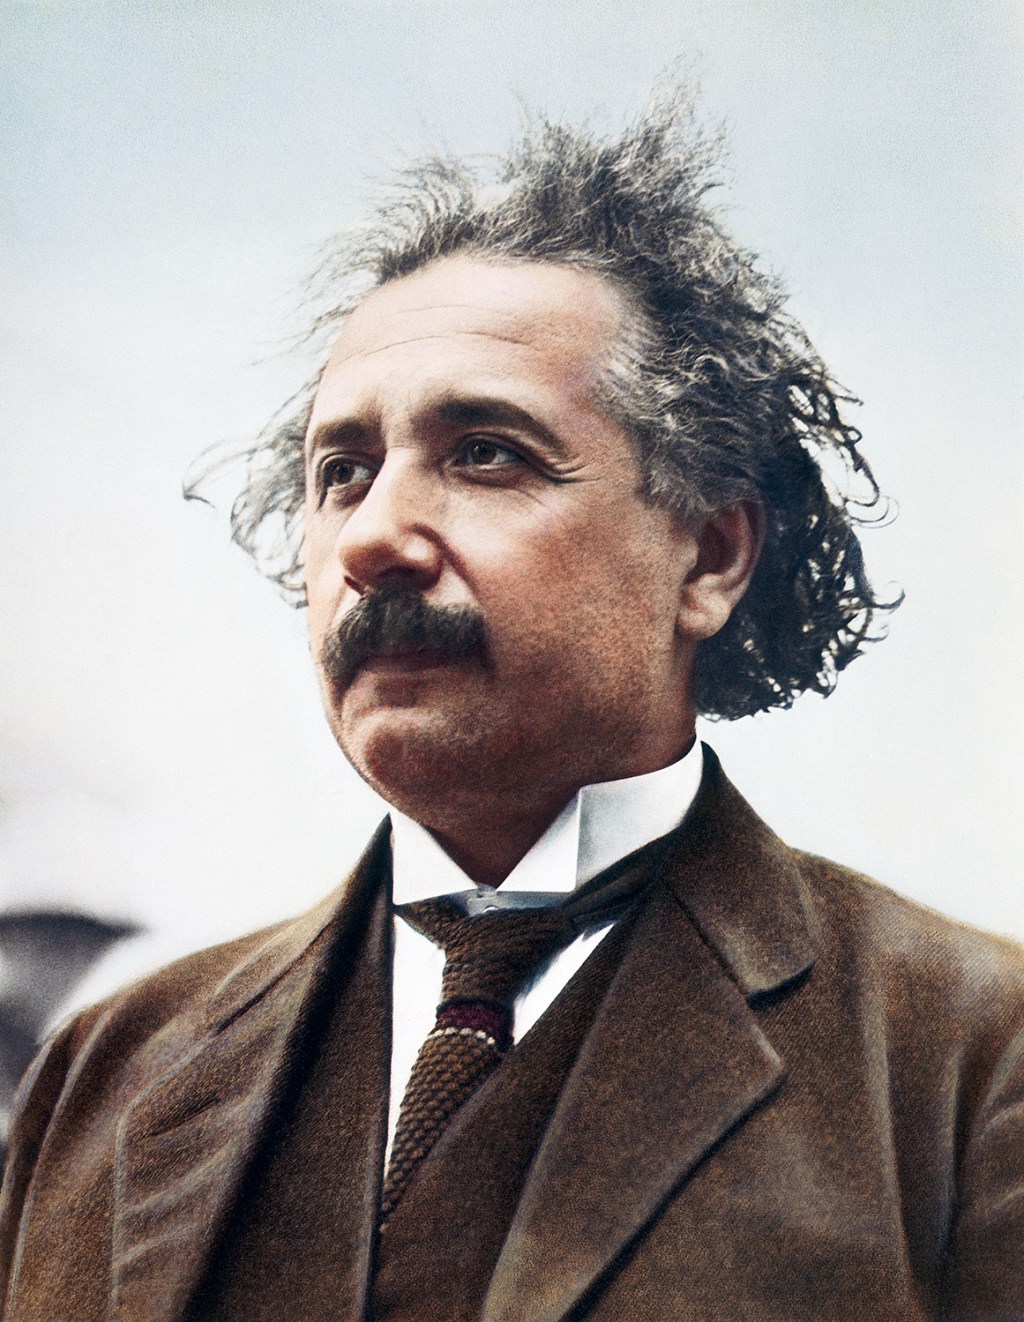 “A intuição é um dom divino e a razão, uma serva fiel.” - Albert Einstein (1879-1955), físico alemão